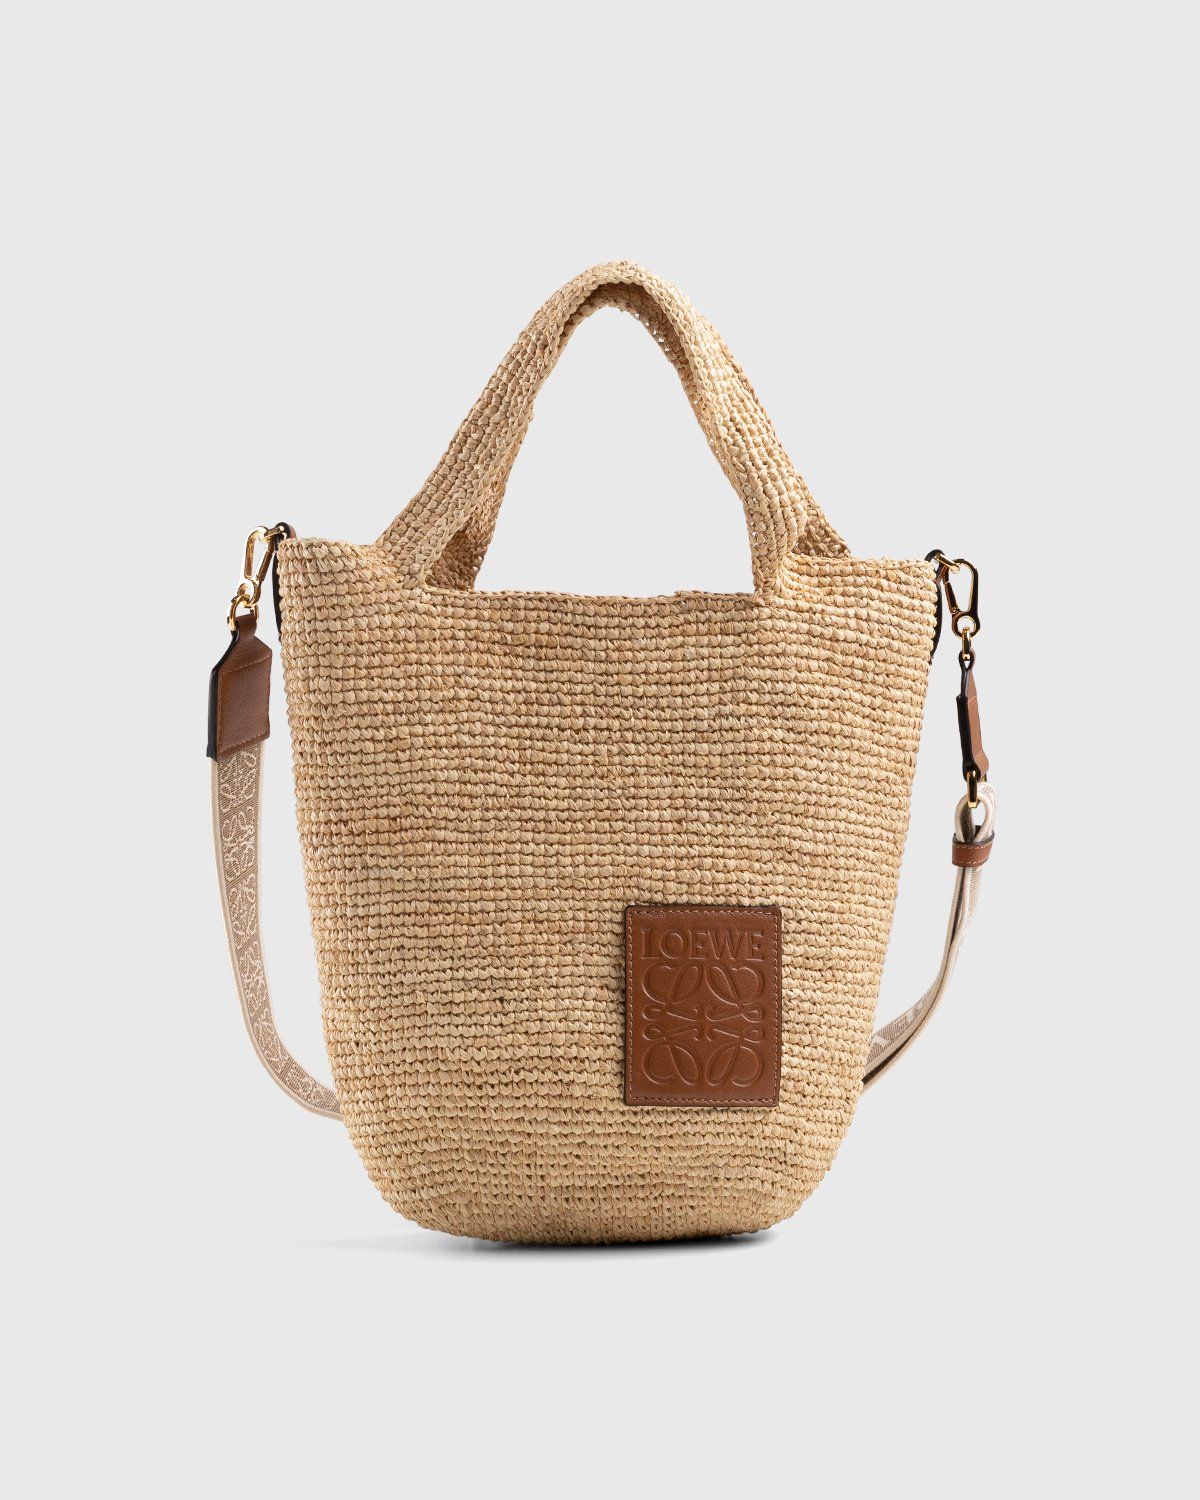 Paulas Ibiza Fold Basket Bag in Beige - Loewe